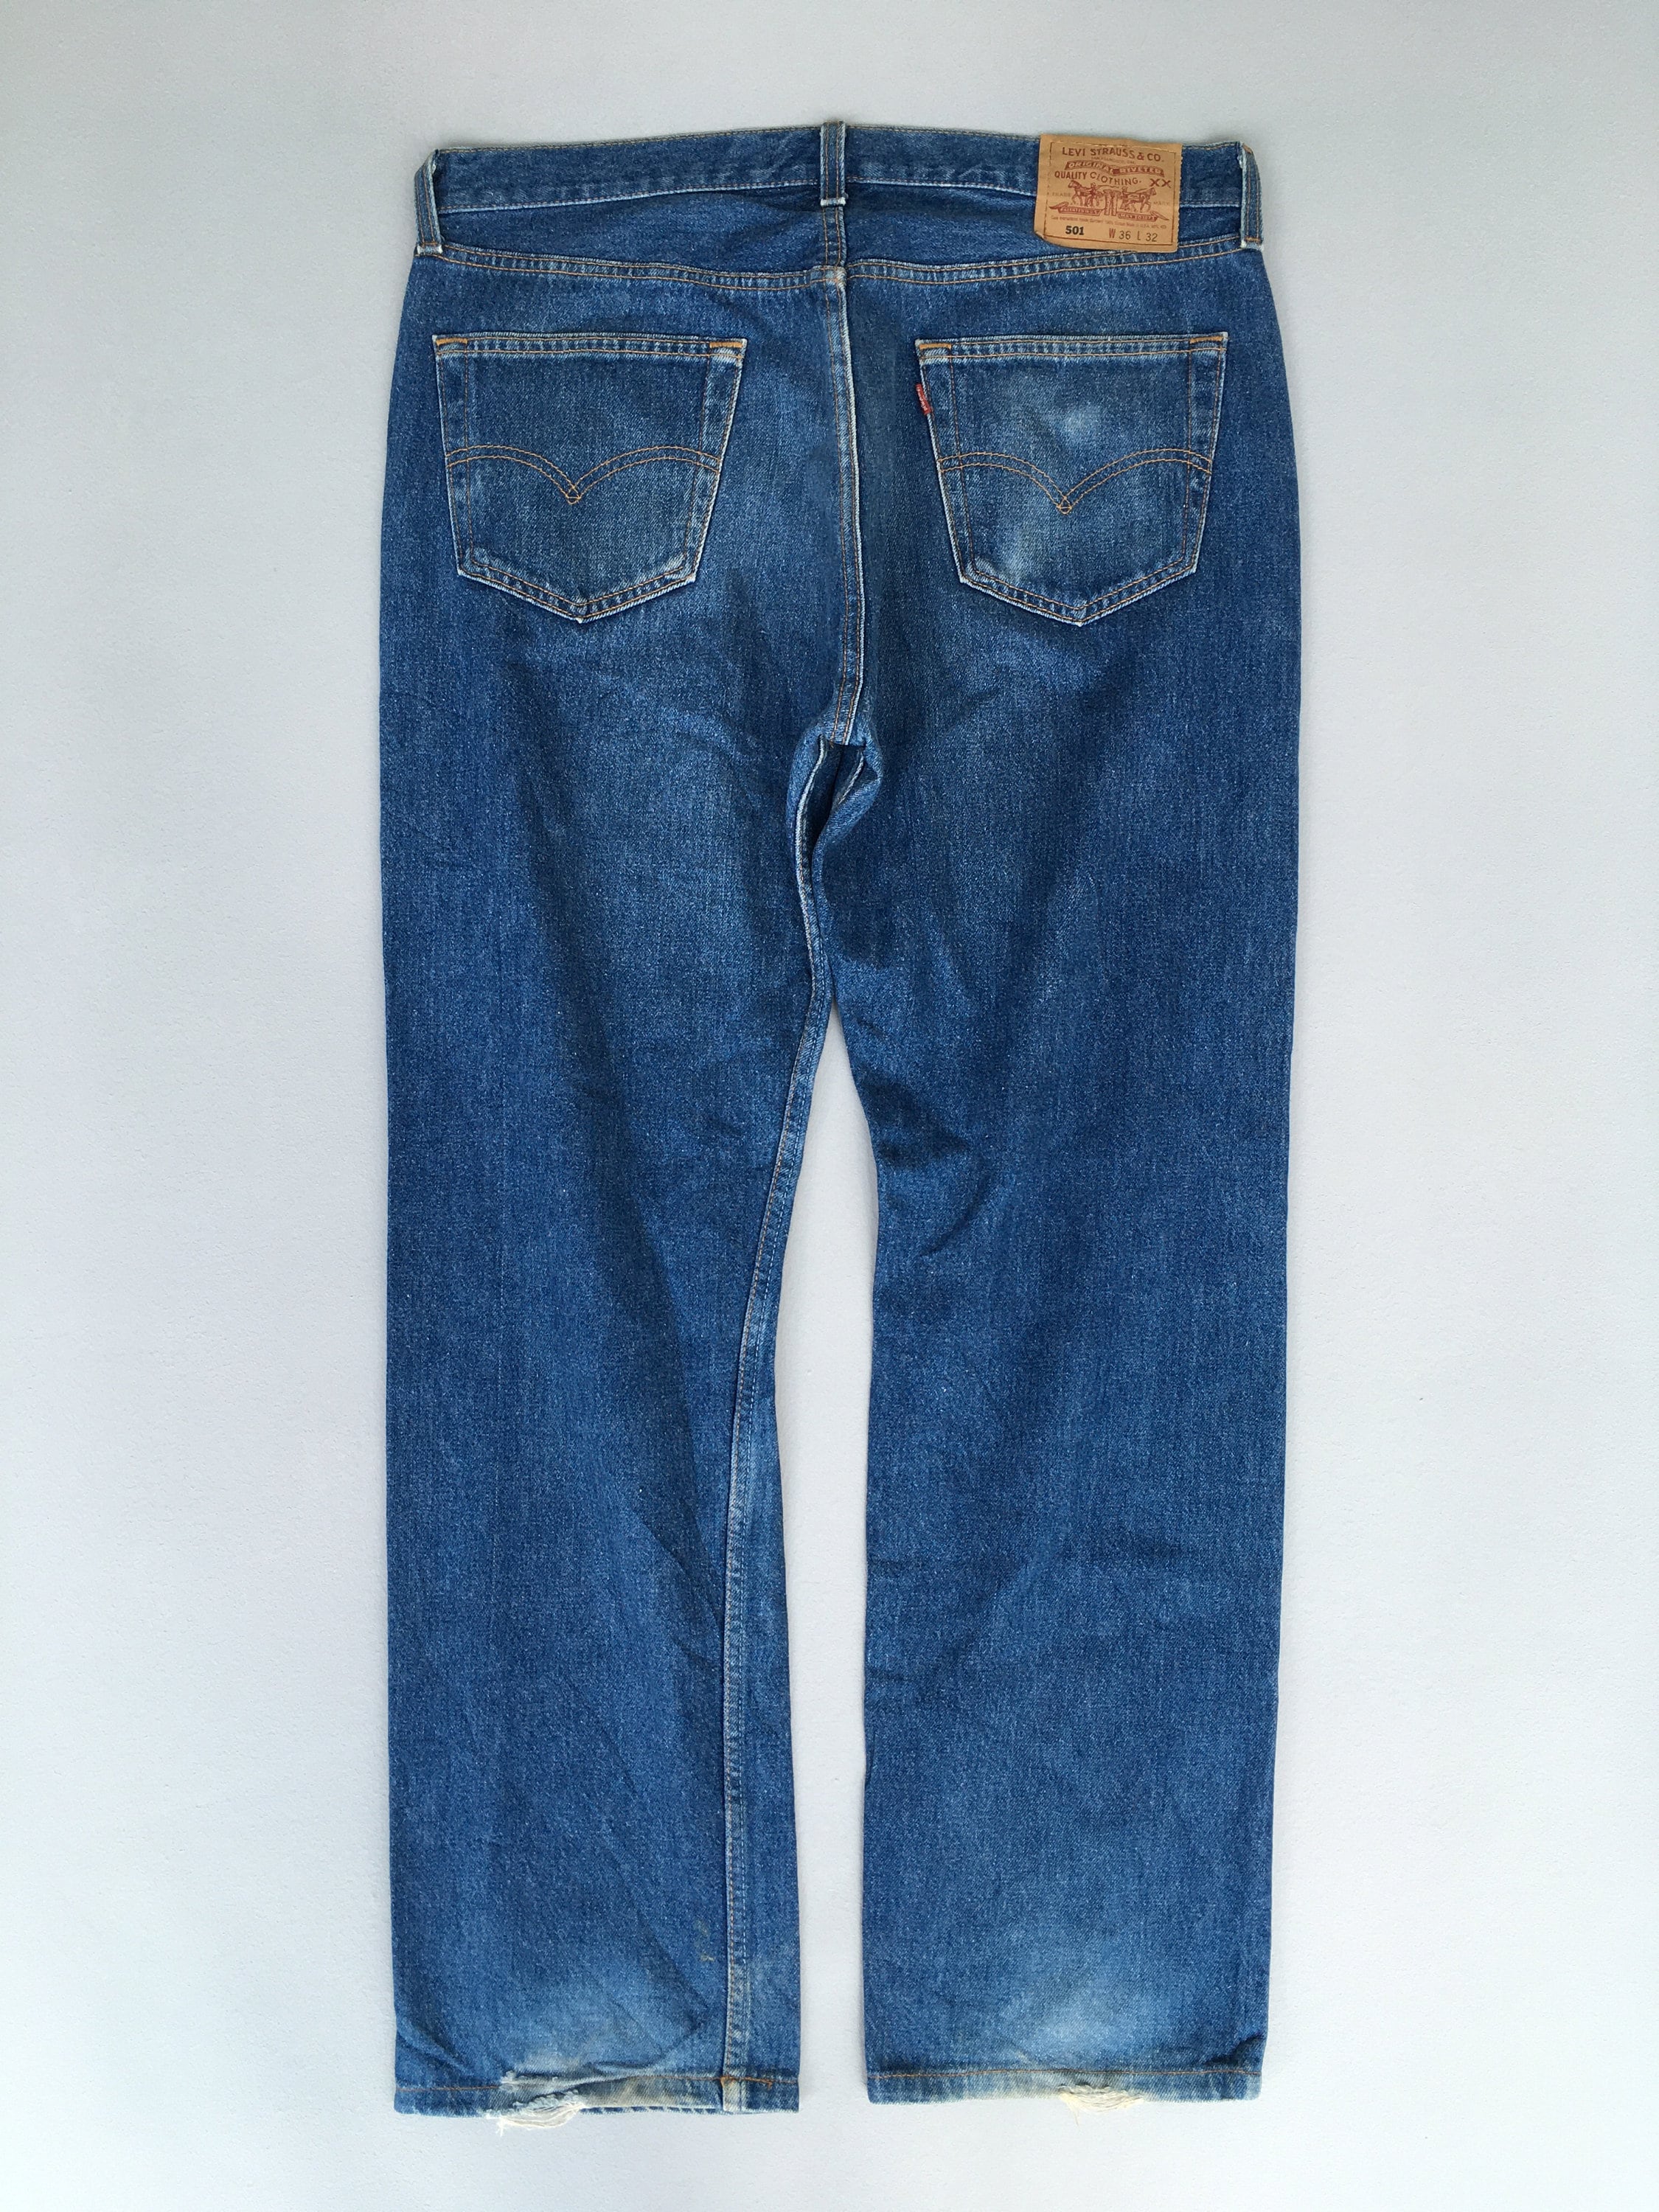 Size 35x30 Vintage Levis 501 Indigo Blue Jeans Men Levi's - Etsy